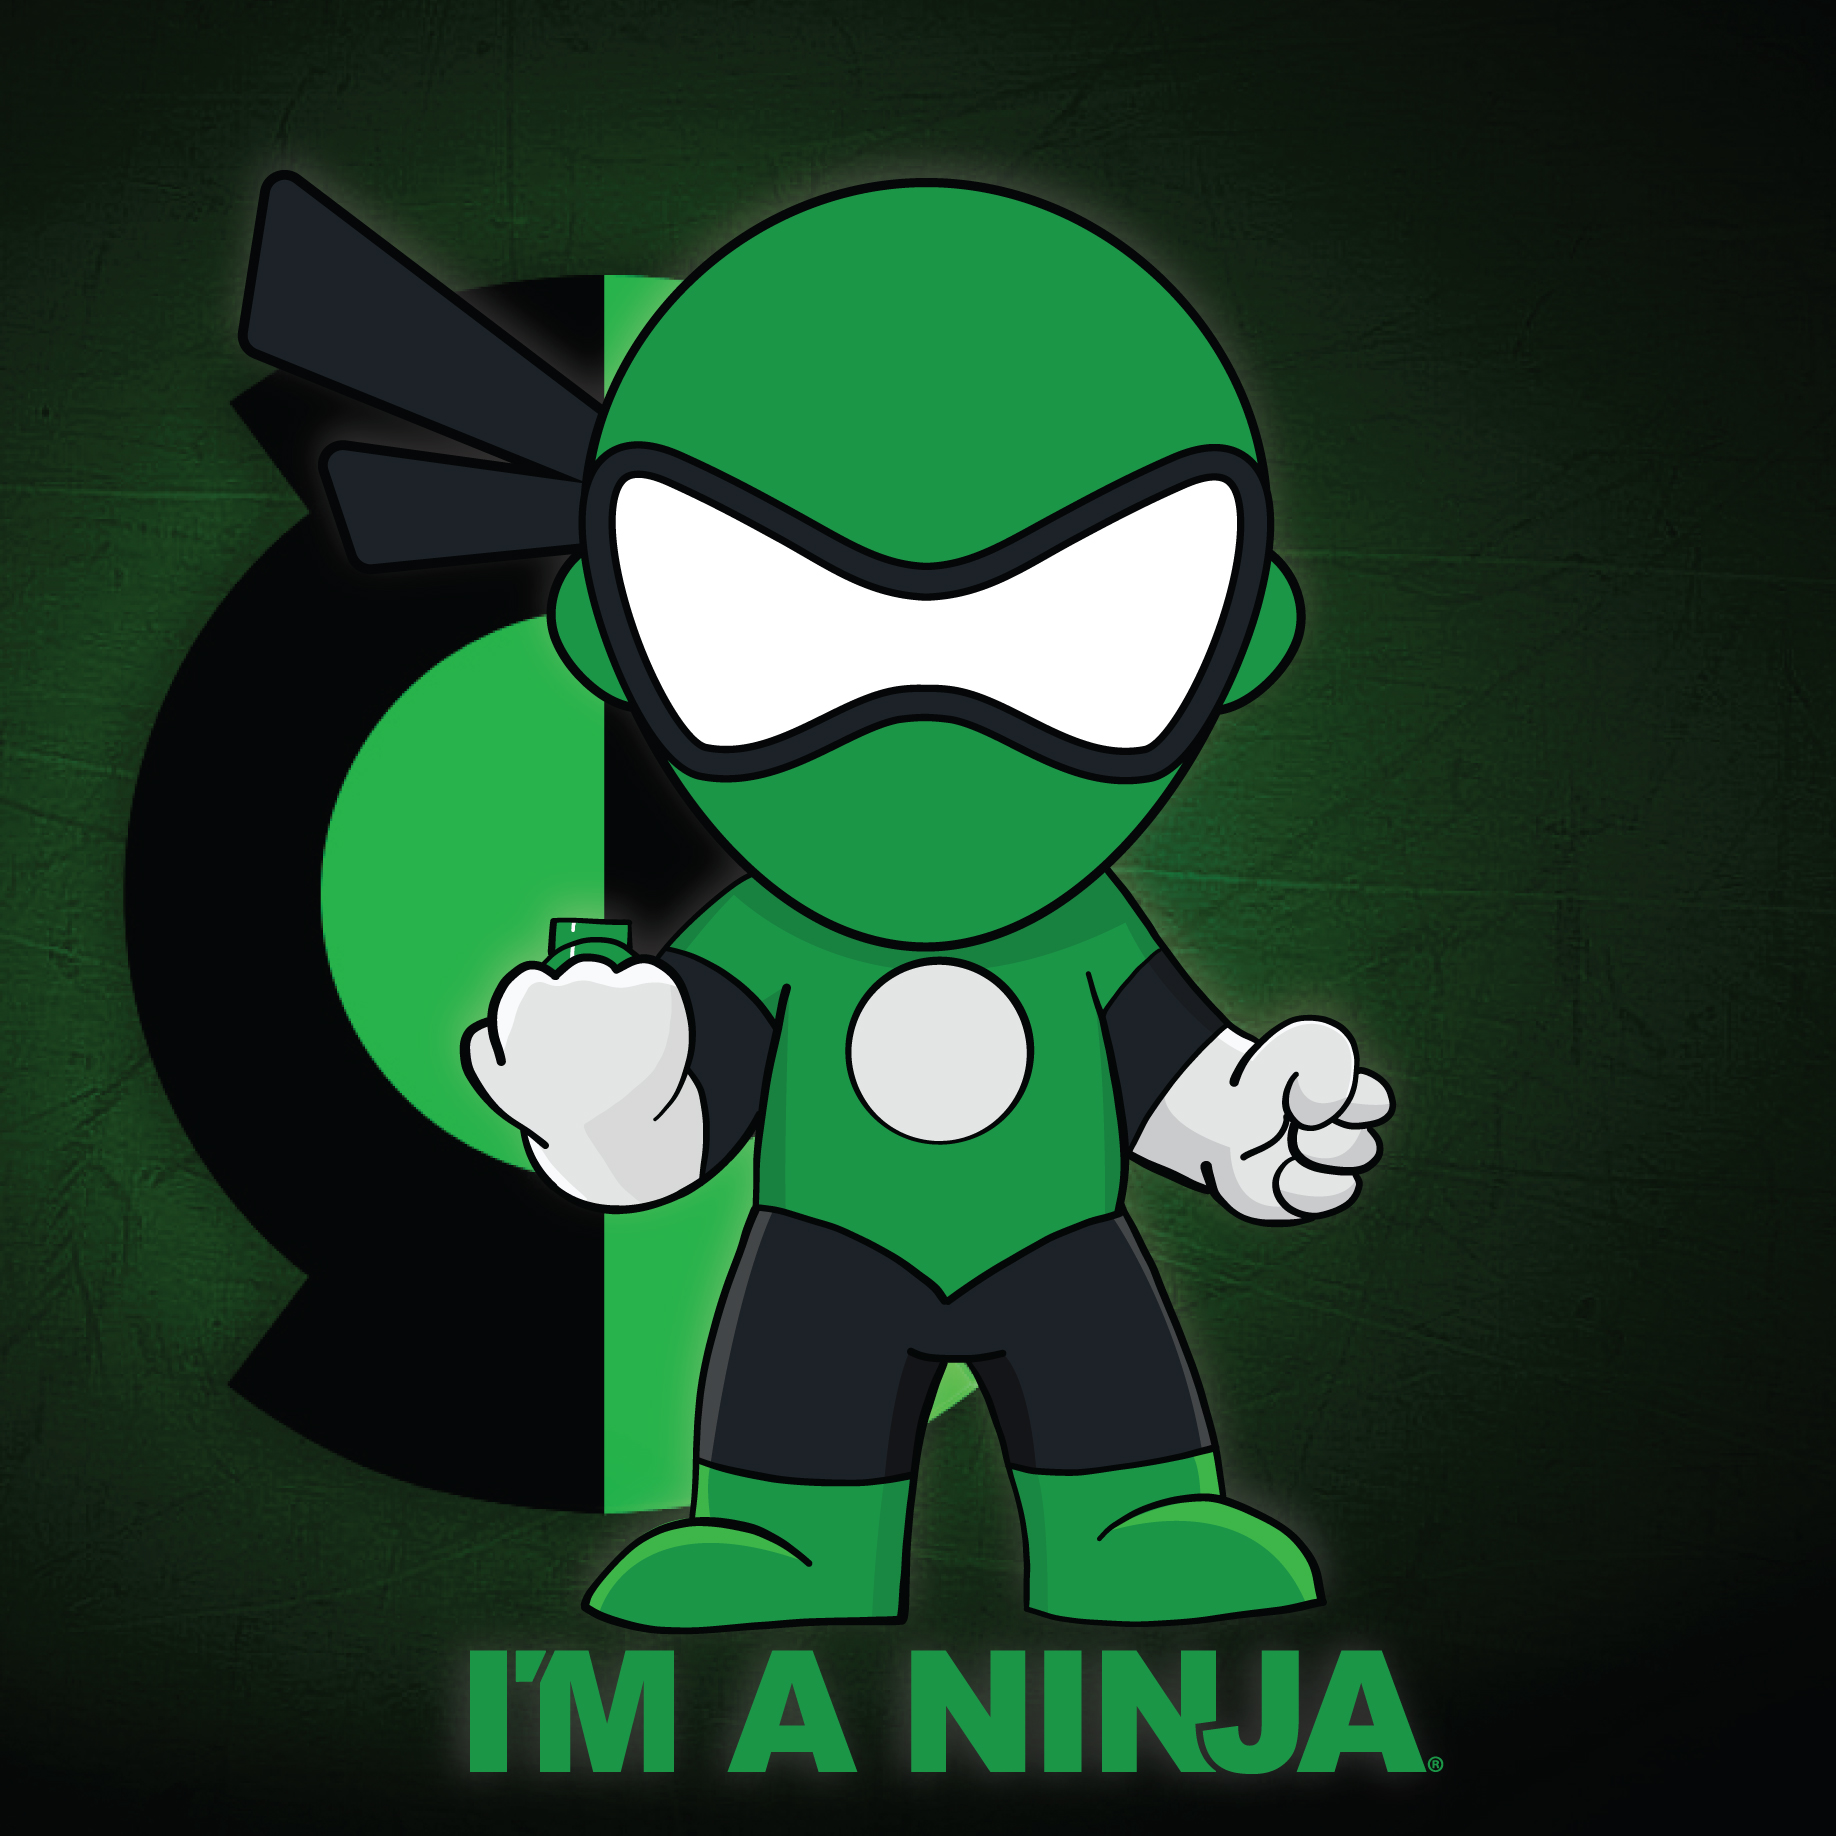 Green Lantern x I'M A NINJA